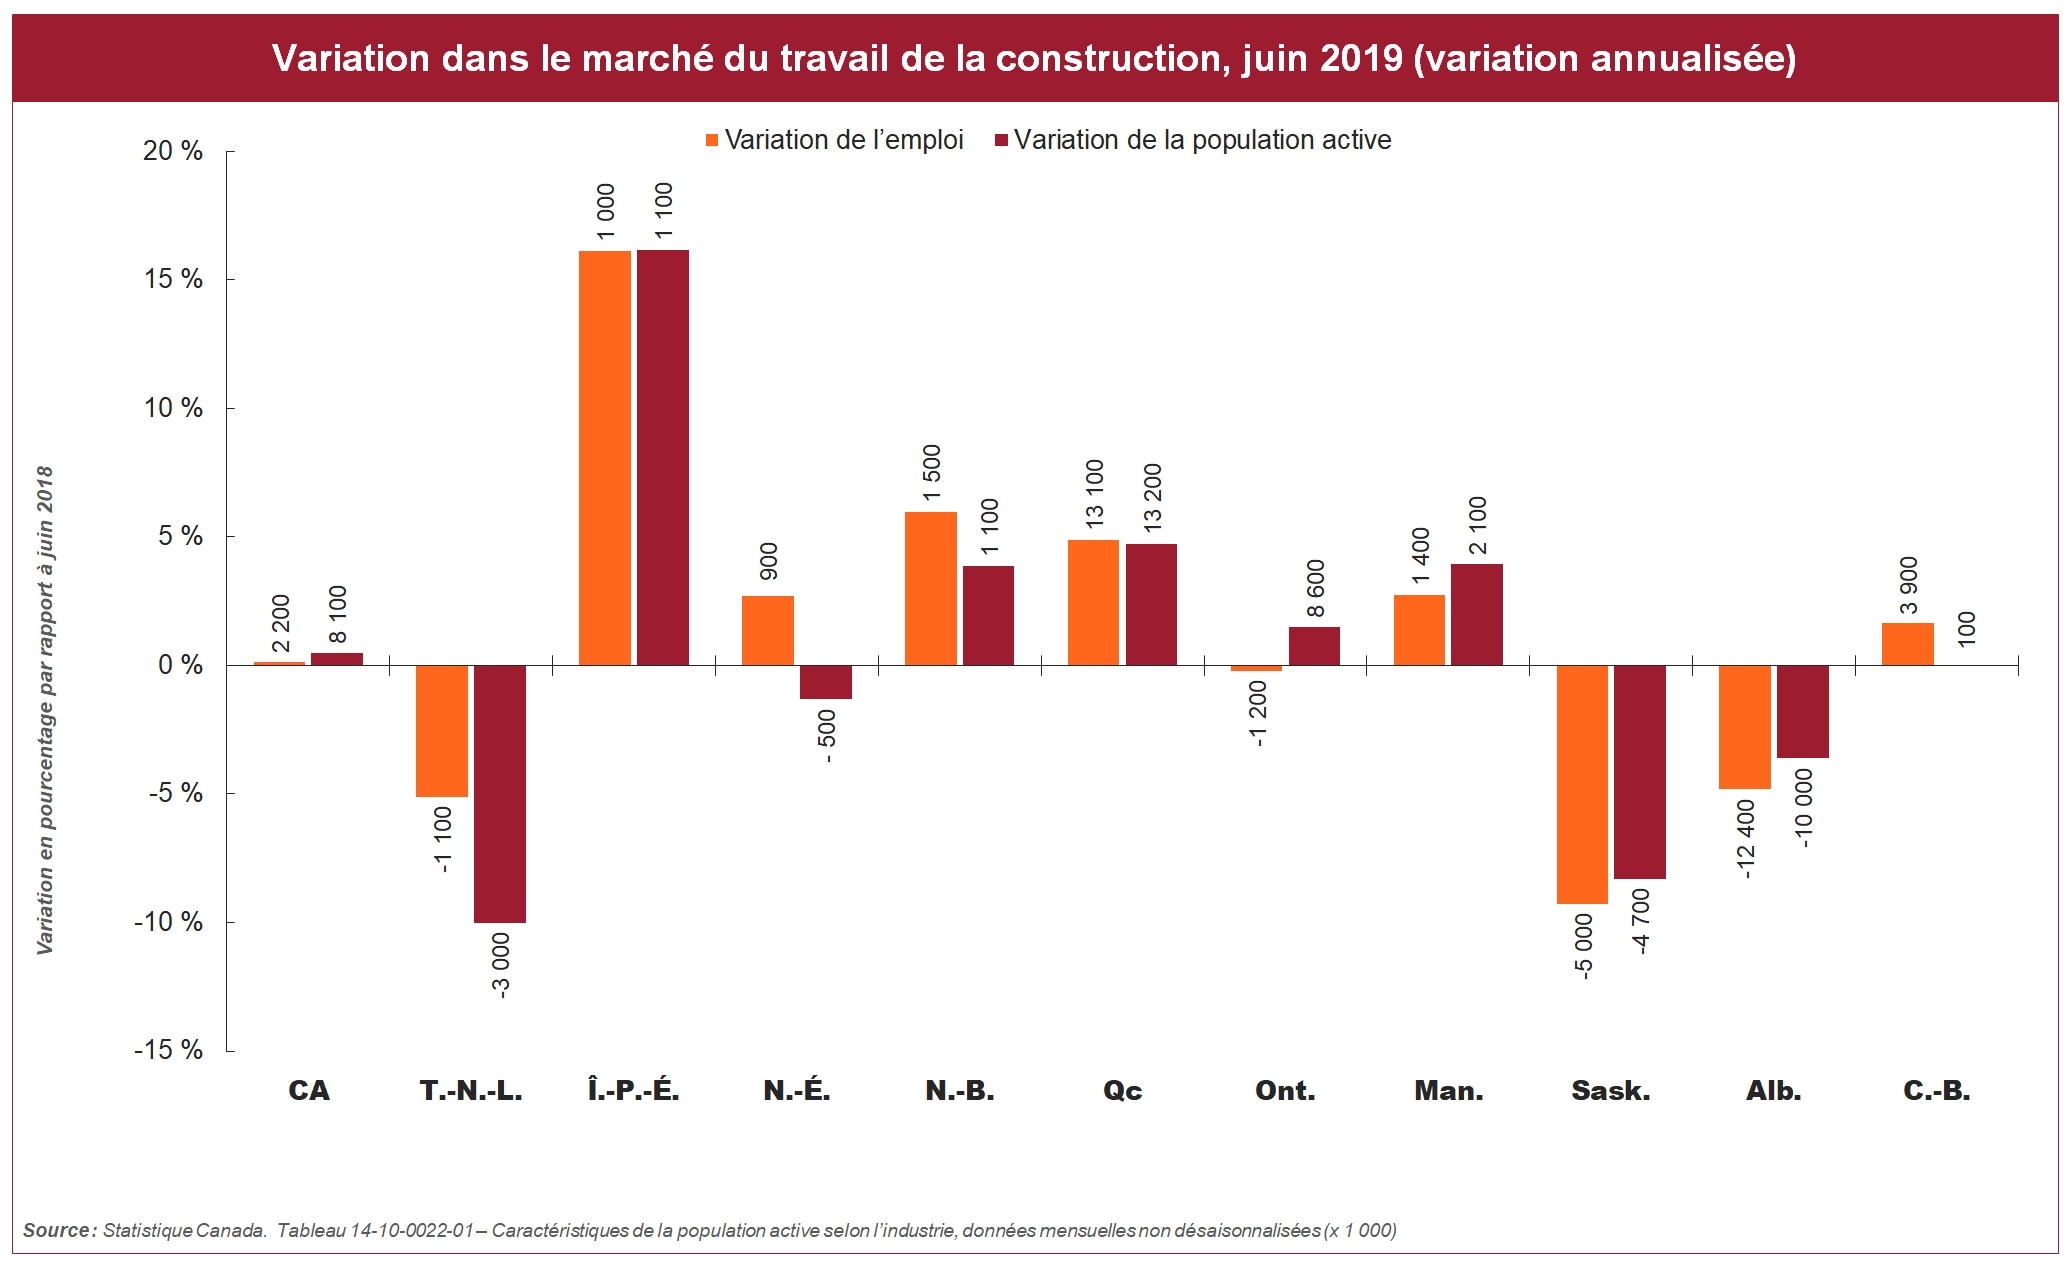 [figure] Variation dans le marché du travail de la construction, juin 2019 (variation annualisée)